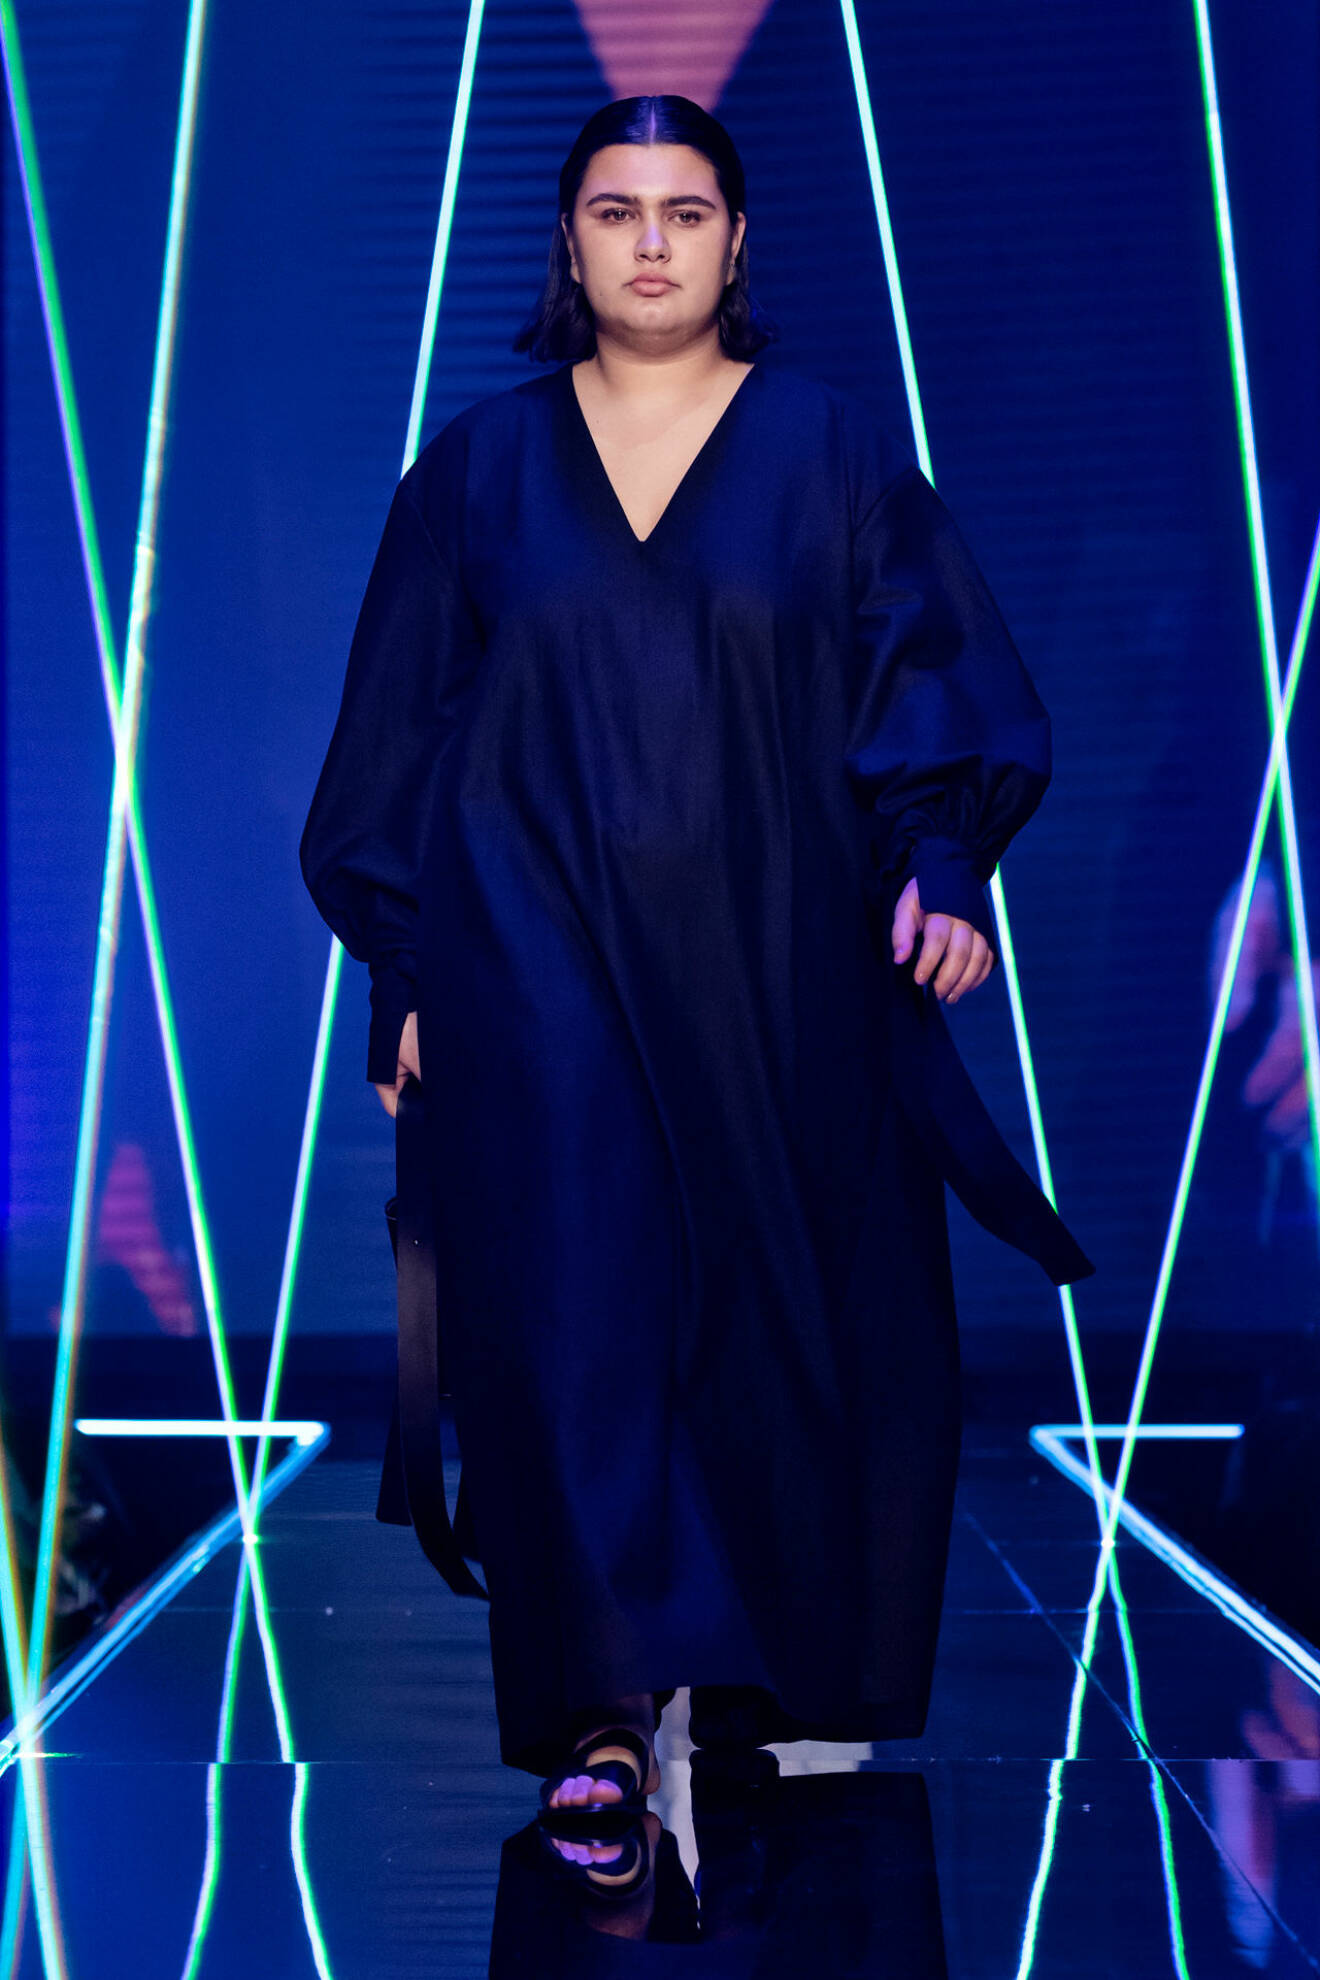 Längre klänning i svart från visningen av årets nykomling Amanda Borgfors Mészáros.